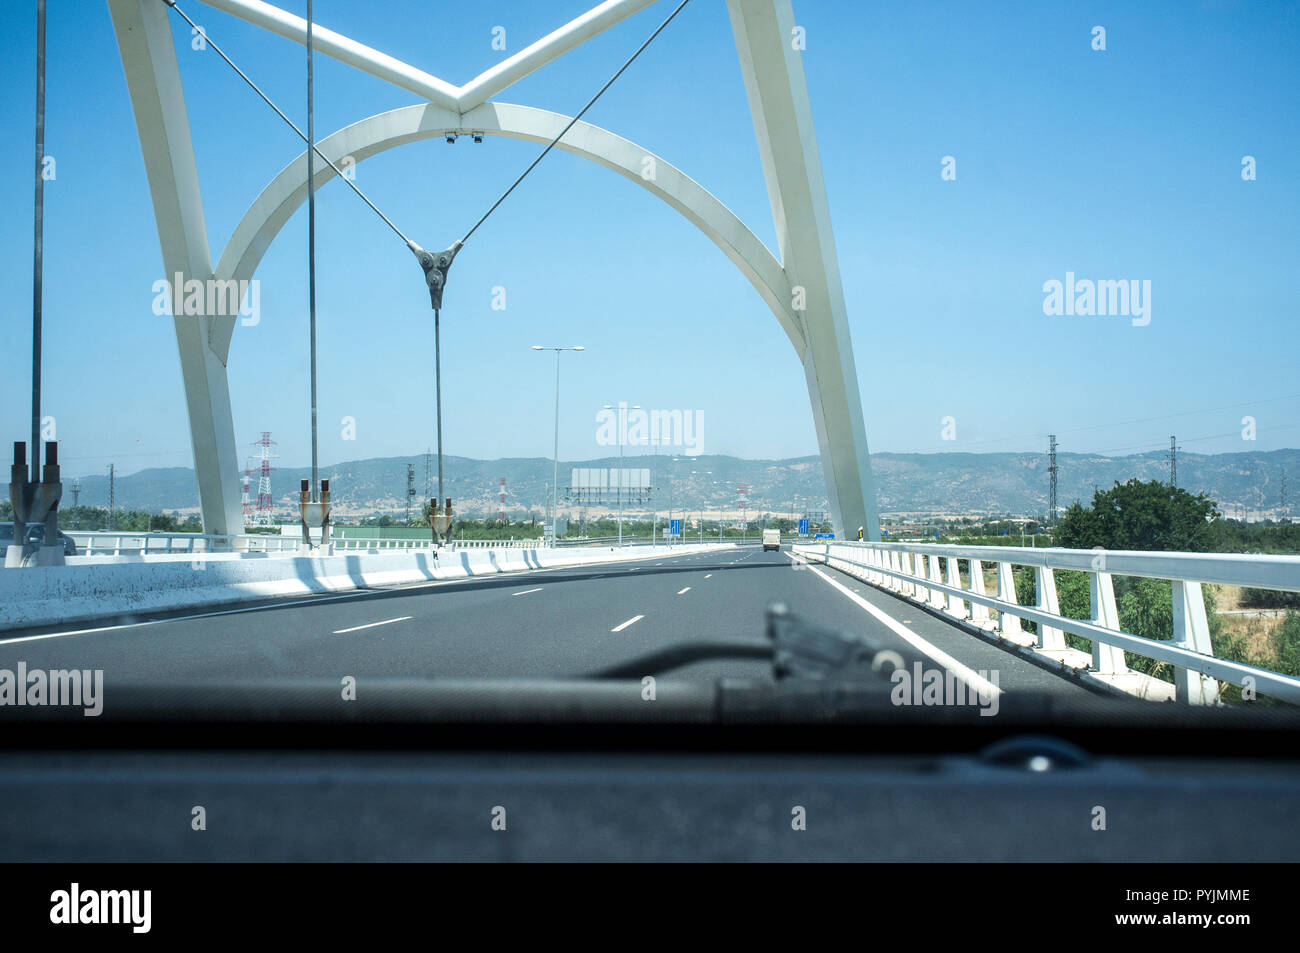 Cordoba, Spanien - 10. Juli 2018: Fahren von Ibn Abbas Firnas Brücke in der Nähe von Cordoba Stadt. Blick aus dem Inneren des Autos. Von JL Manzanares konzipiert Stockfoto